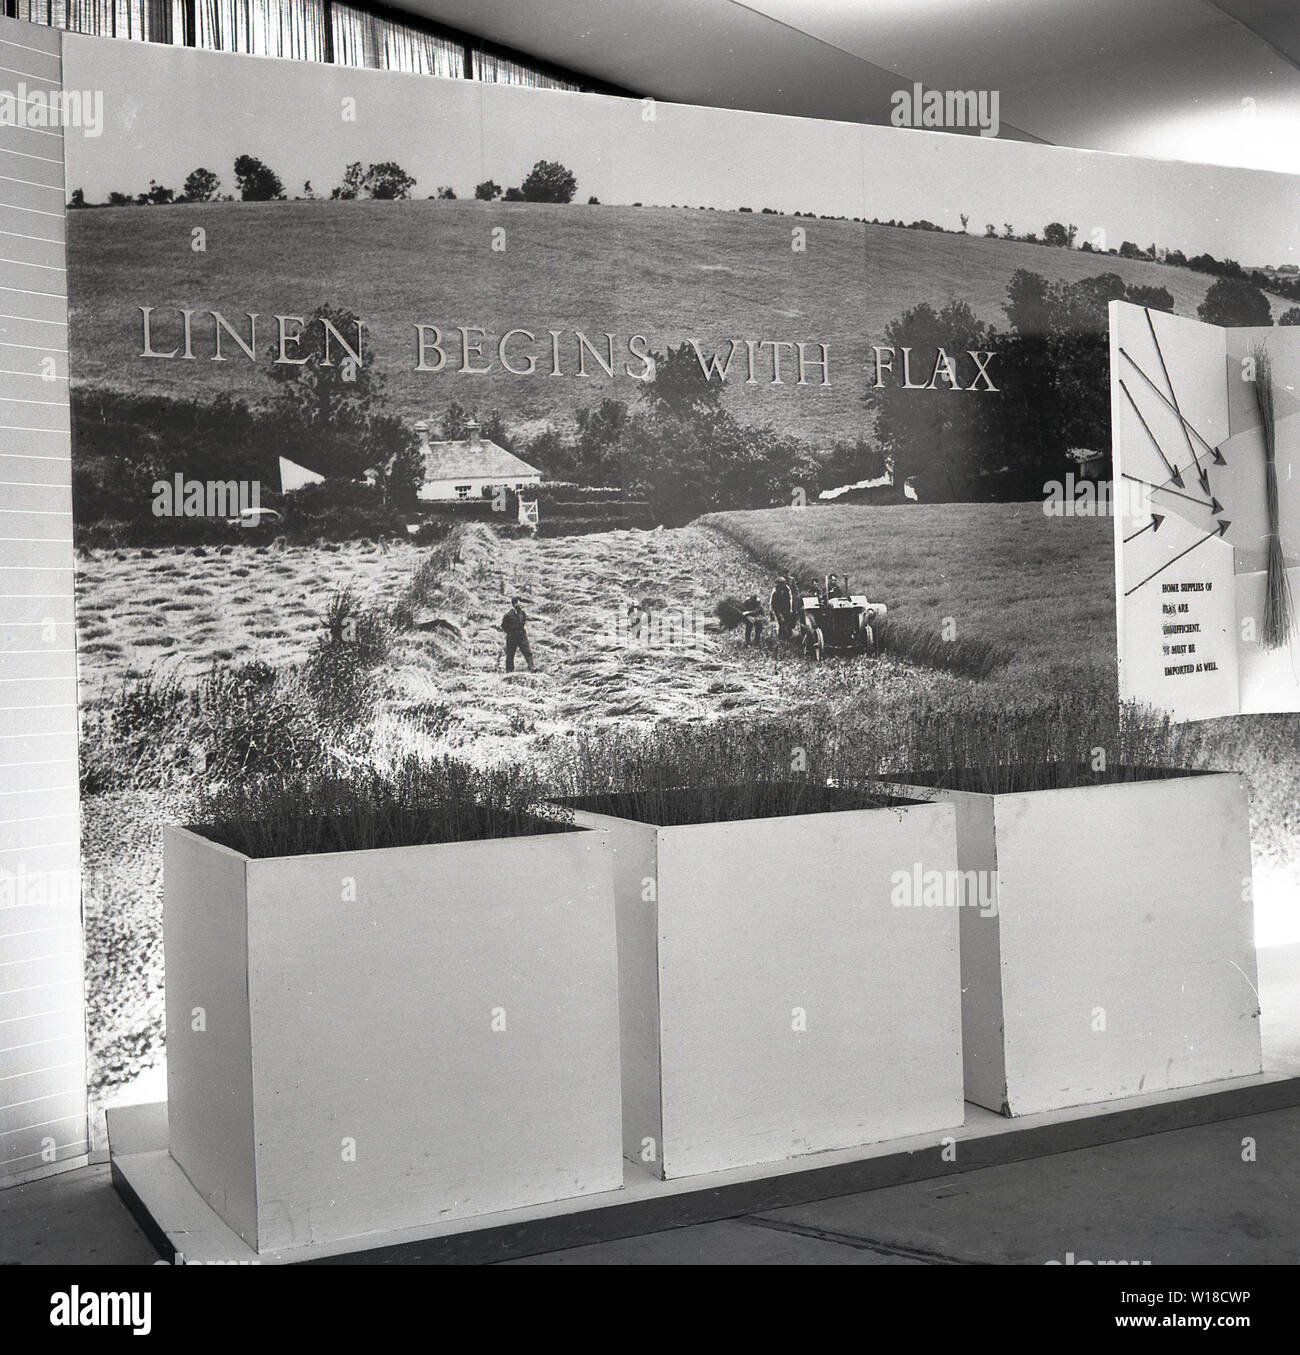 1960, histórica, la pantalla stand promocional para Lino irlandés en Irlanda del Norte show agrícola con el título ' comienza con LINO lino', subrayando la calidad de lino irlandés procede de la calidad del lino, en el momento de un importante cultivo de alimentos y fibras en el país y que había crecido en Irlanda desde el siglo 11. Foto de stock